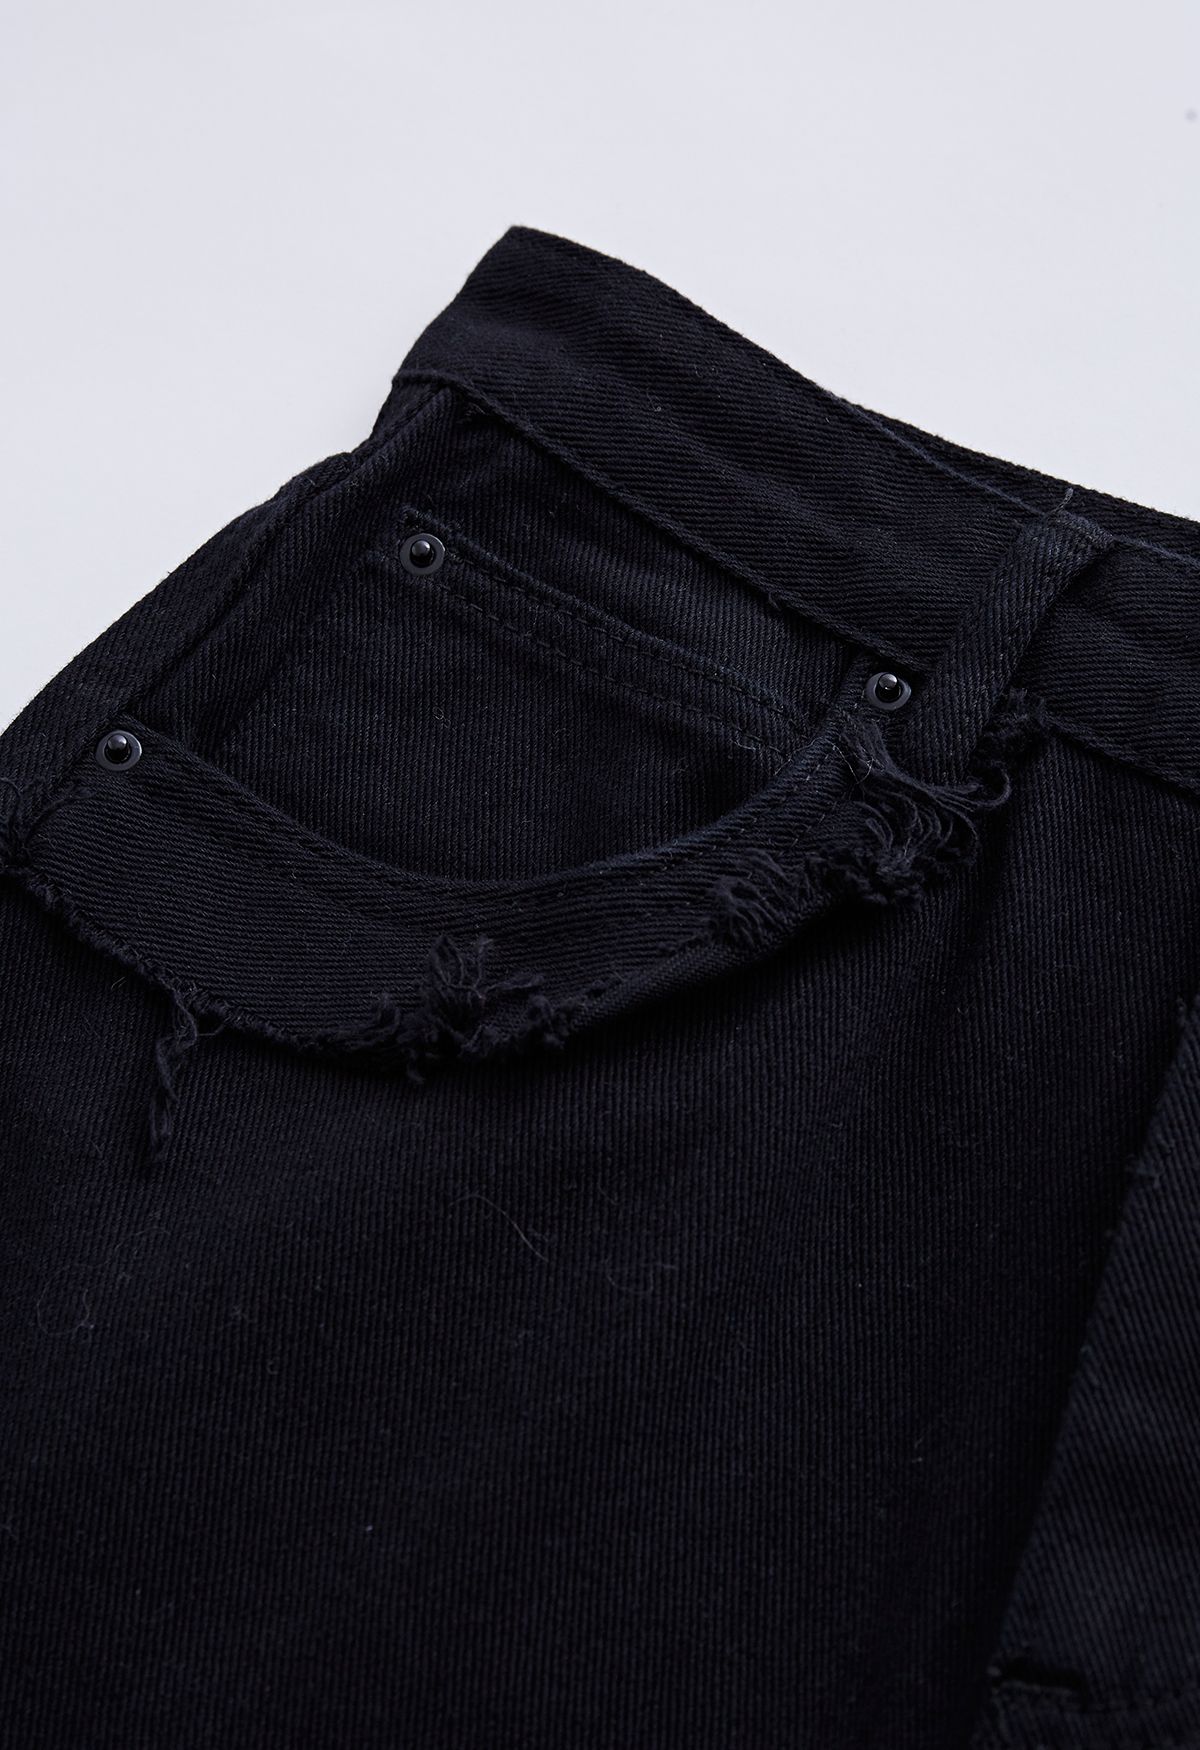 Jeans Flare de bolso clássico com detalhe desfiado em preto